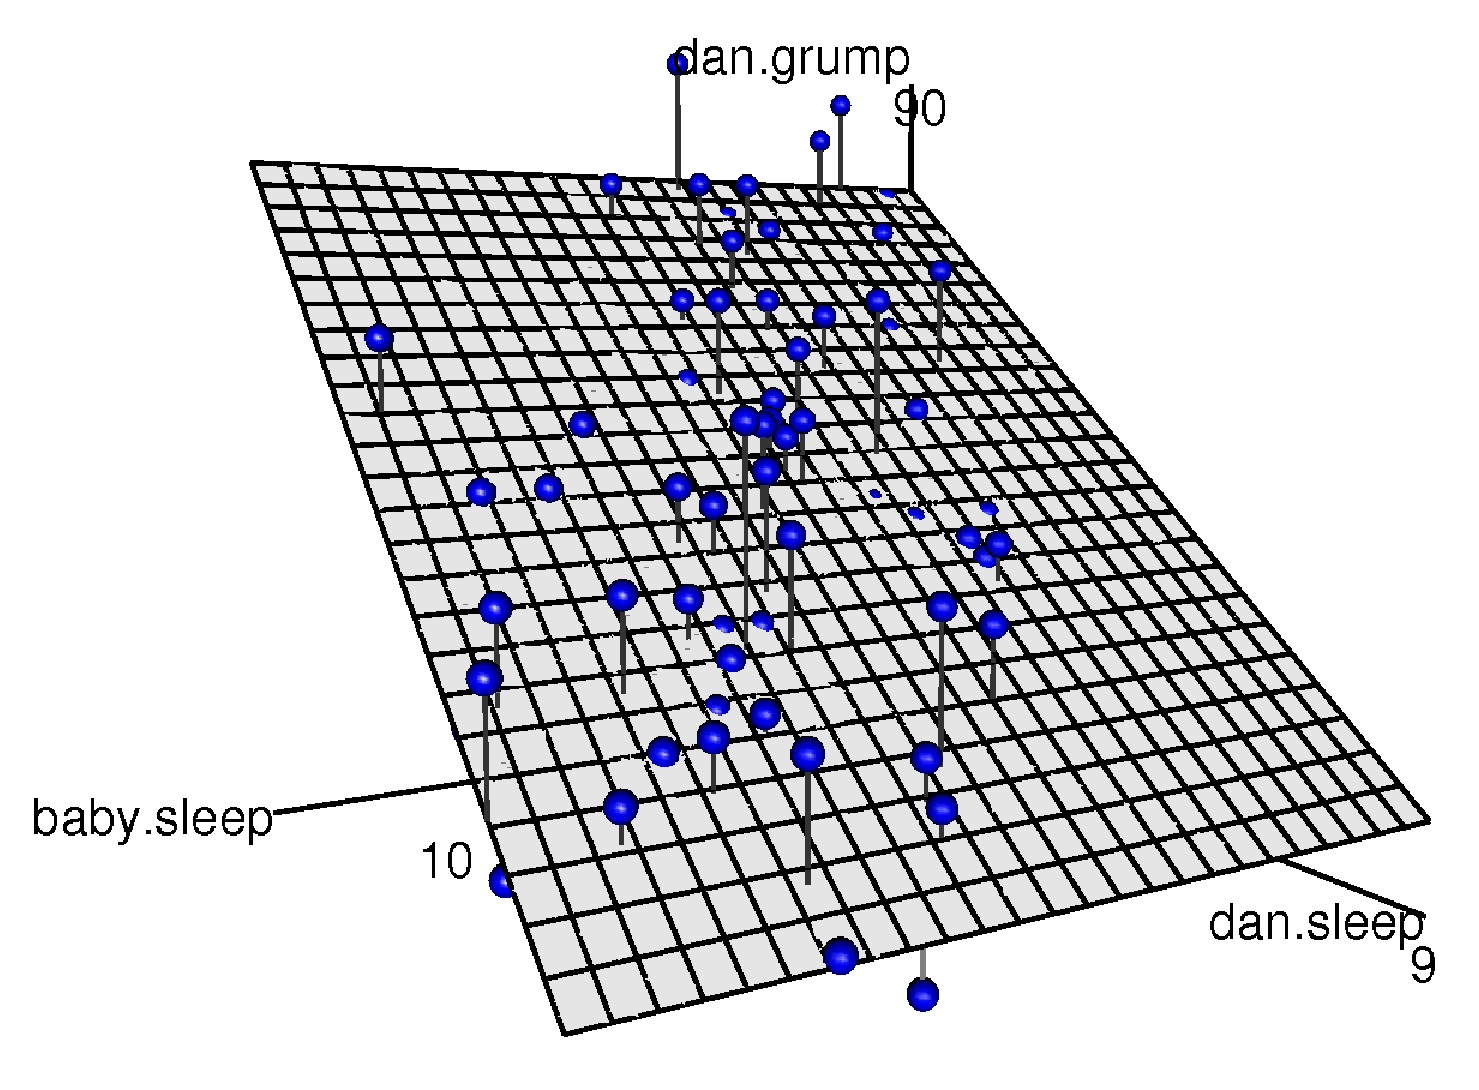 重回帰モデルの視覚化。モデルには<span class="rtext">dan.sleep</span>と<span class="rtext">baby.sleep</span>という2つの予測変数があり、結果変数は<span class="rtext">dan.grump</span>である。これら3つの変数を1つの図で表そうとすると，3次元の空間が形成される。各観測値はこの空間内に青い点で示されている。単回帰モデルでは2次元平面内に直線が描かれるのと同じように，重回帰モデルでは3次元空間内に平面が形成される。この回帰分析で回帰係数を推定するということは，すべての青い点に可能な限り近い平面を見つけることである。